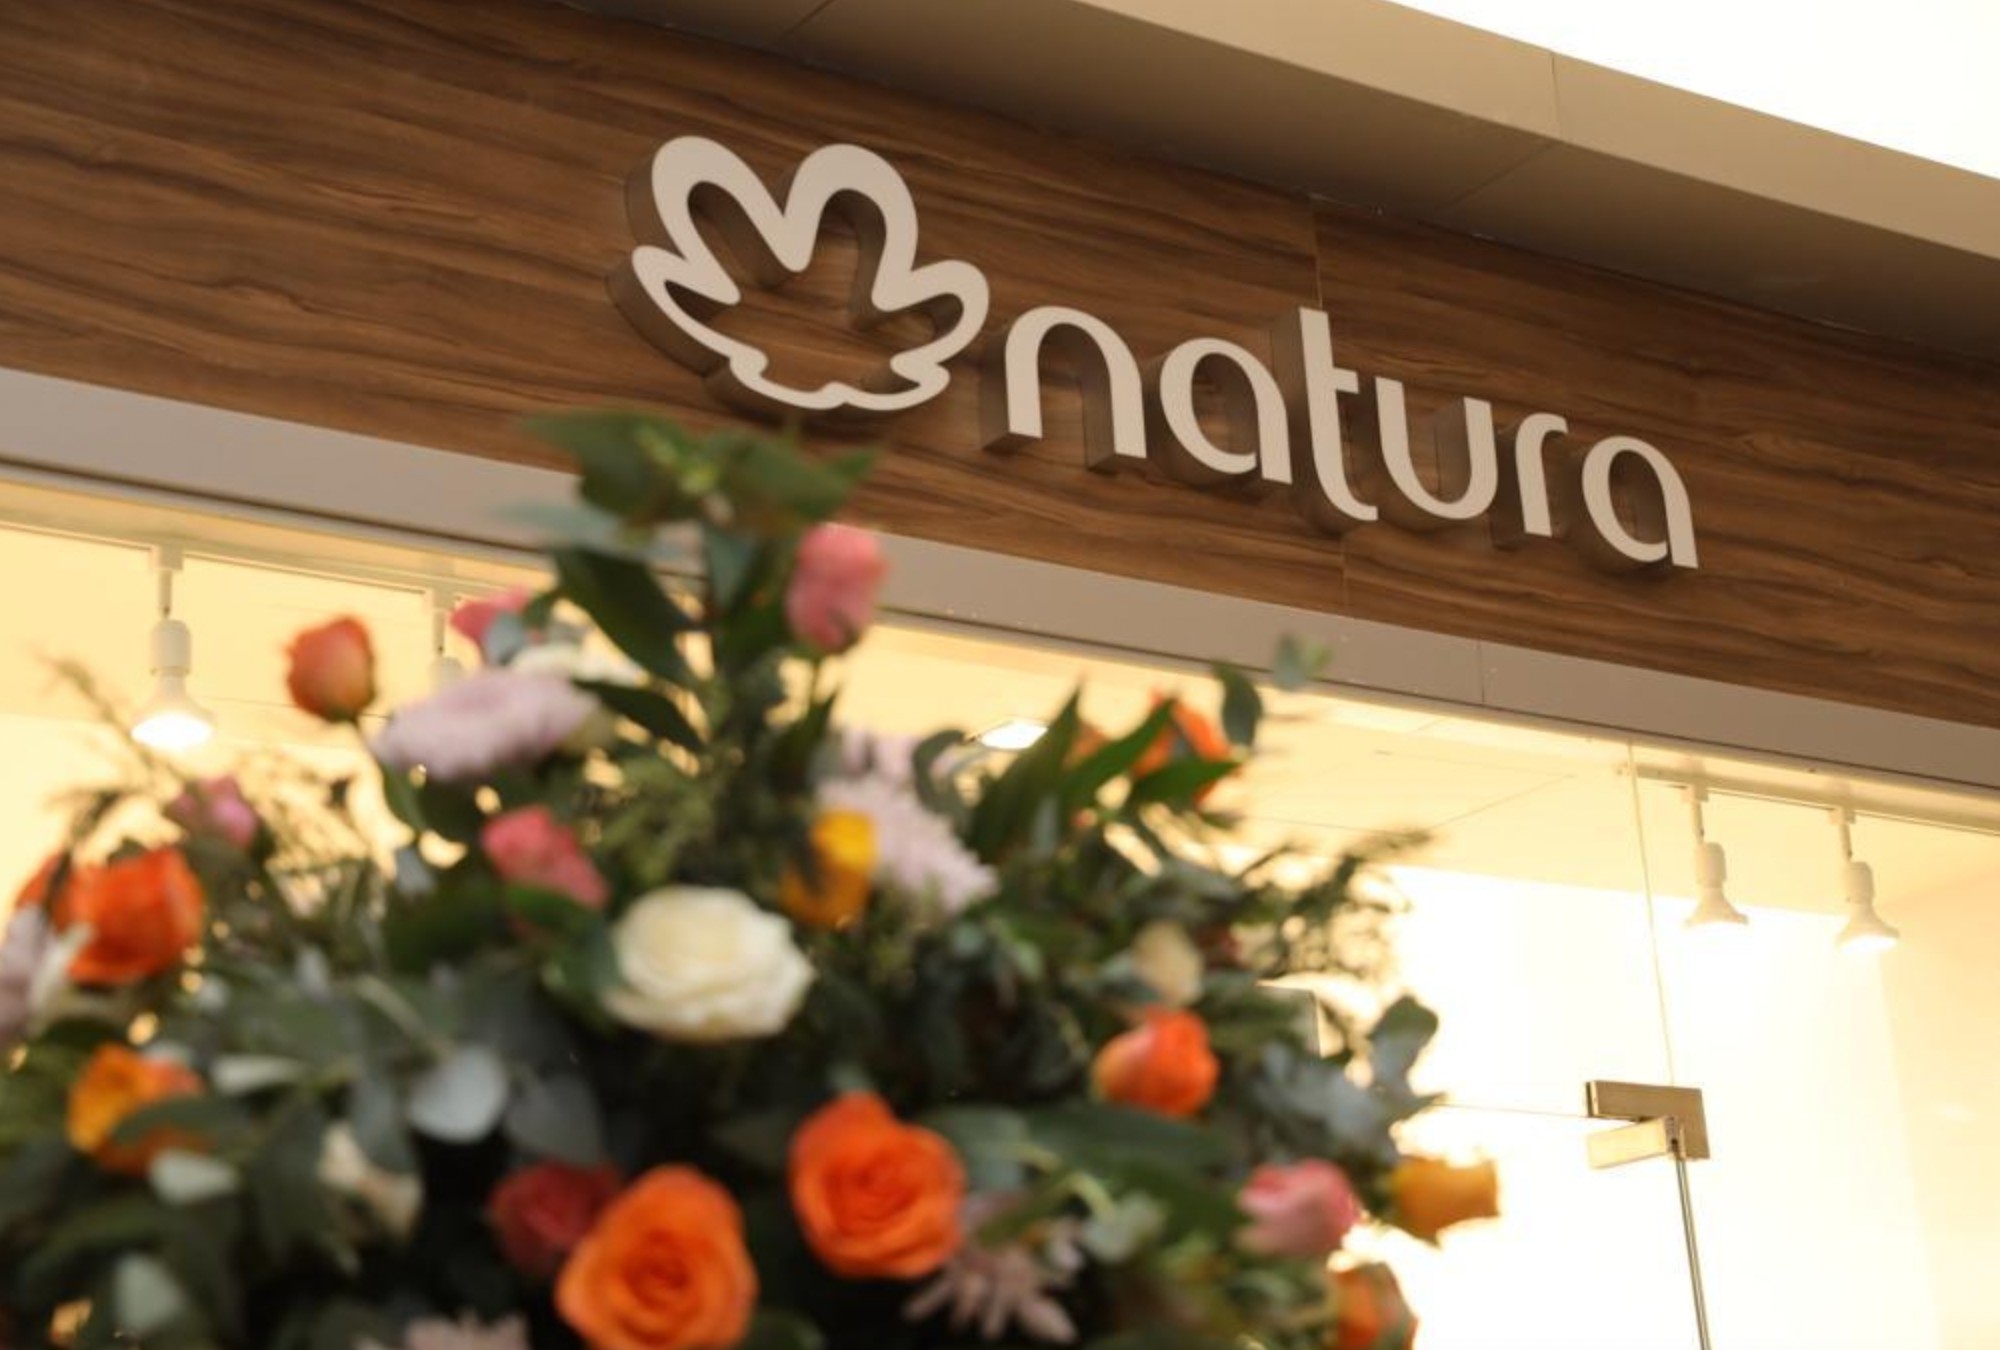 Natura: La empresa que comenzó con la sustentabilidad en mente.